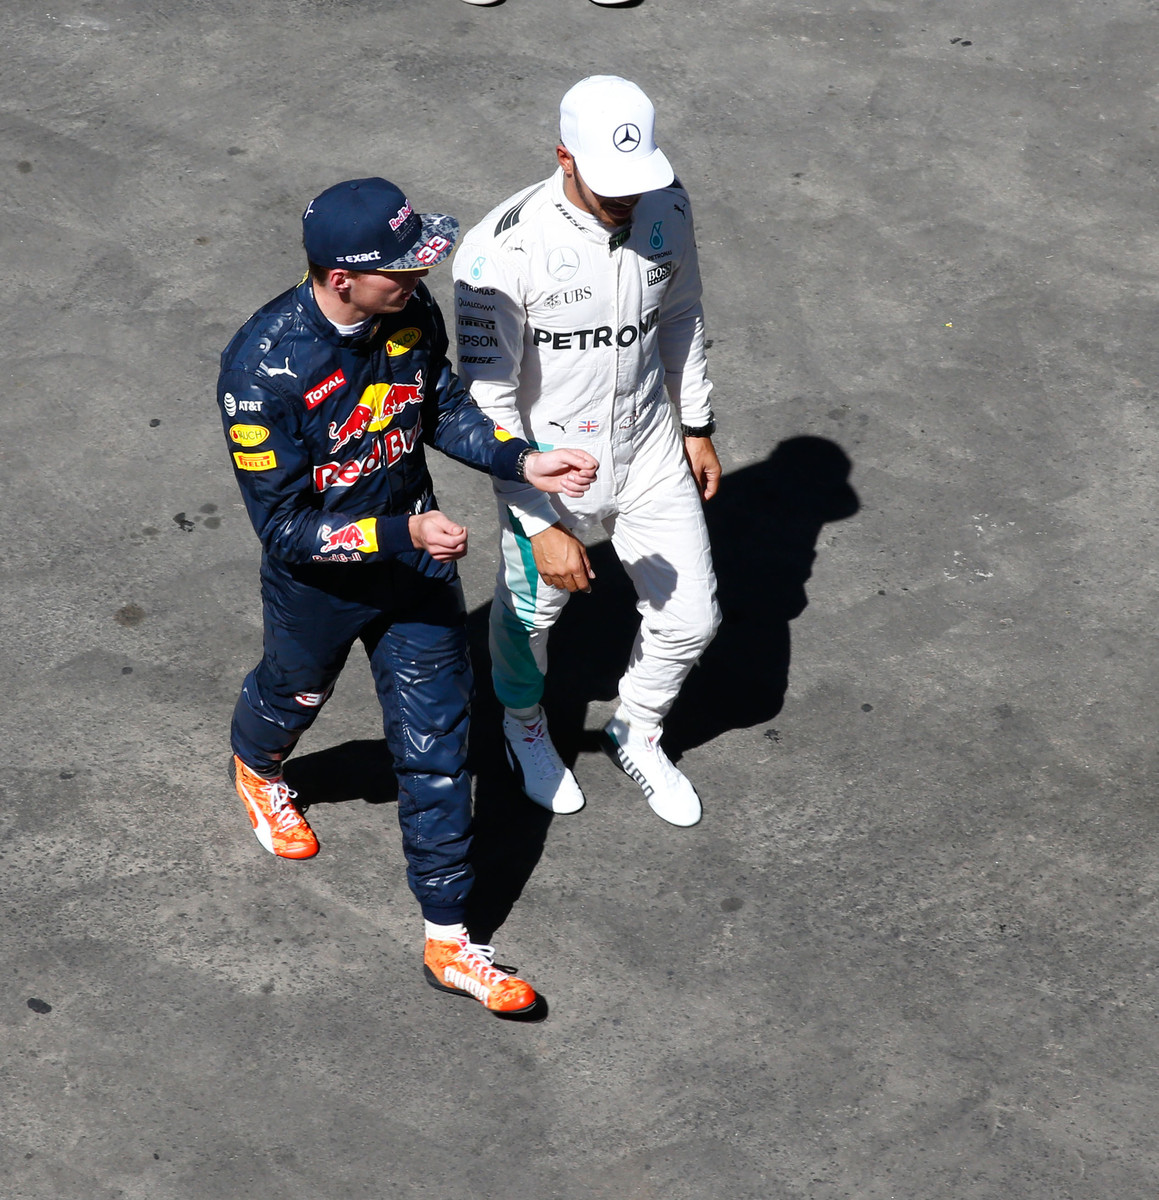 Zatím to vypadá, že se Max Verstappen s Lewisem Hamiltonem potkají spíše mimo trať než při závodě